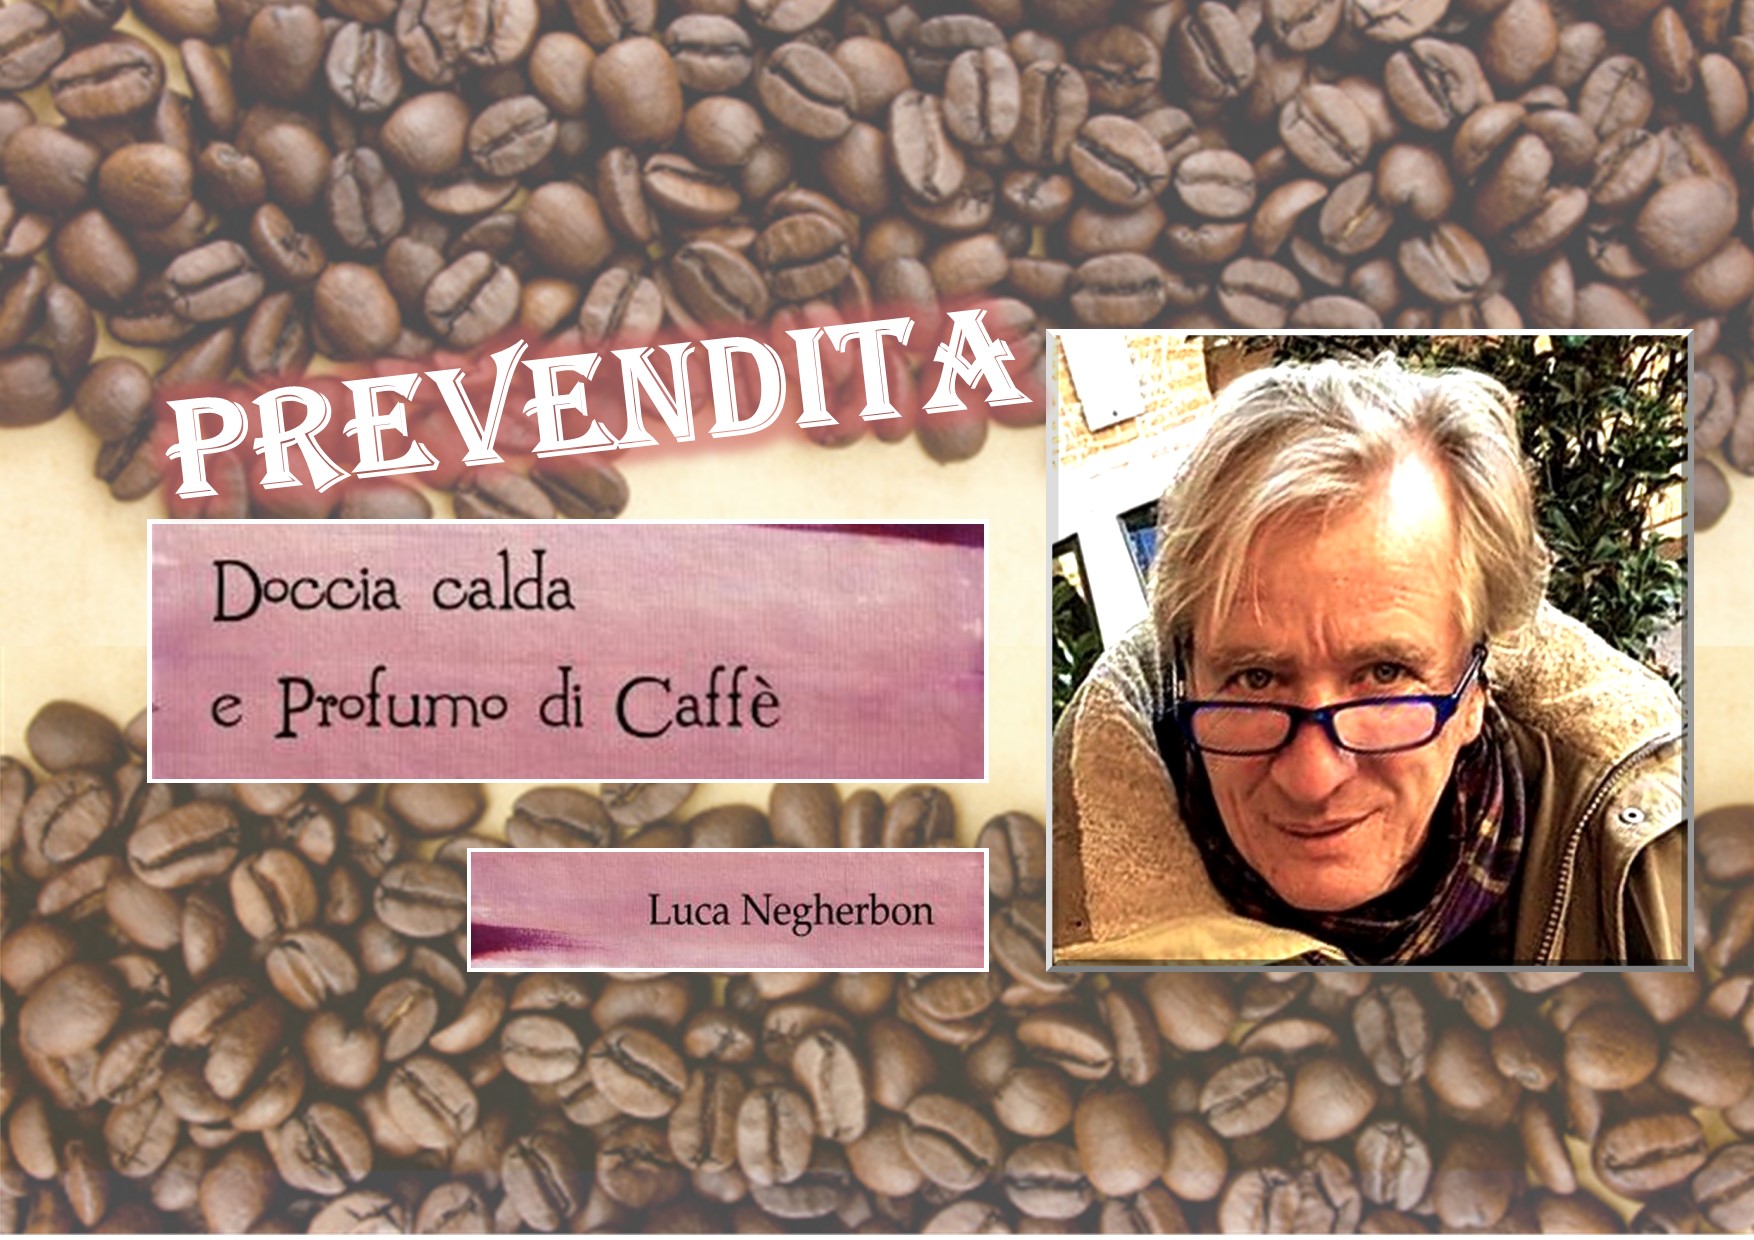 Doccia calda e profumo di caffè di Luca Negherbon: prevendita promozionale del libro